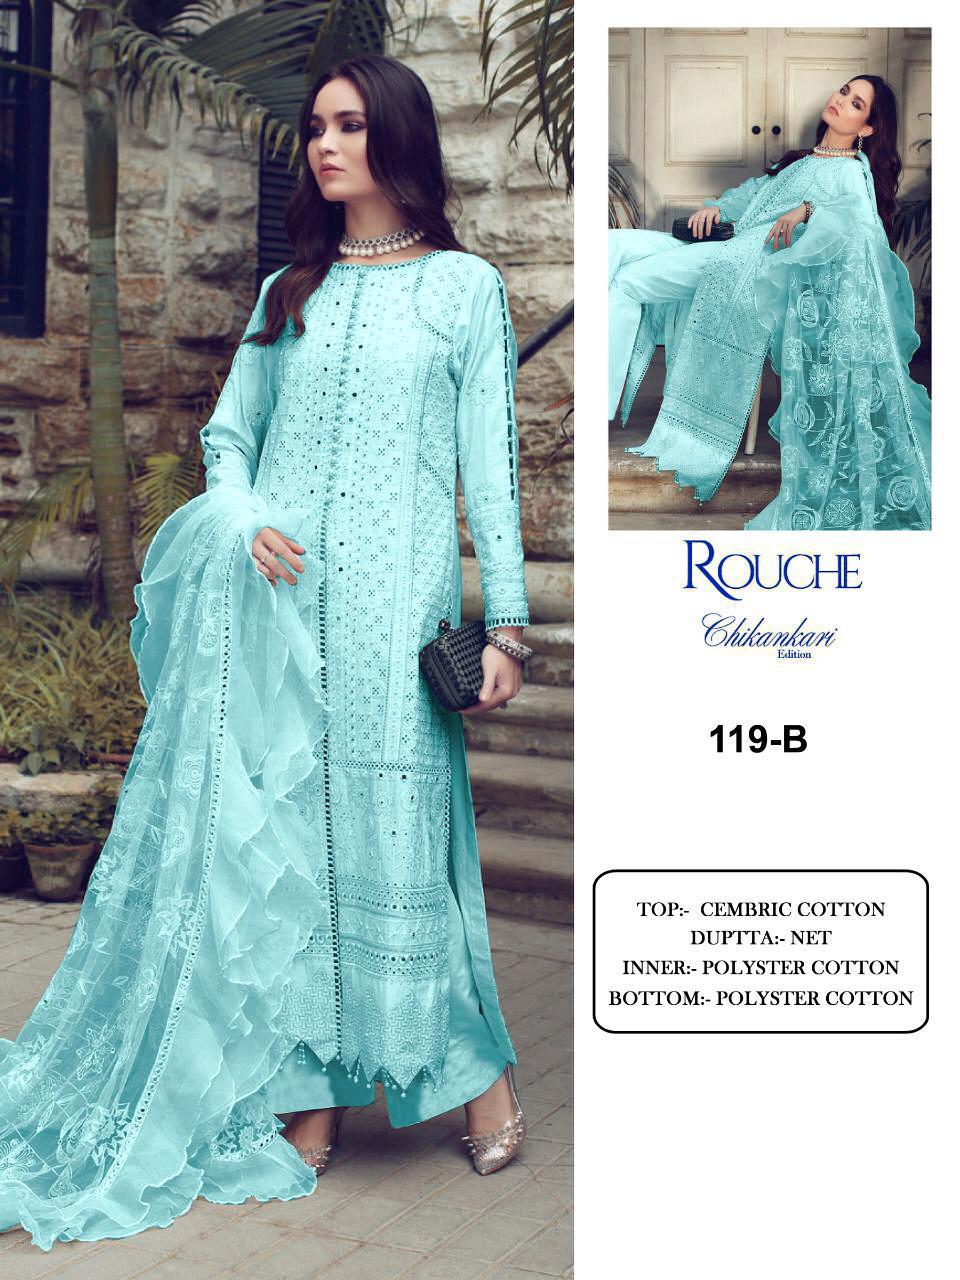 Pakistani Suits Rouche Chikankari Edition KF 119-B